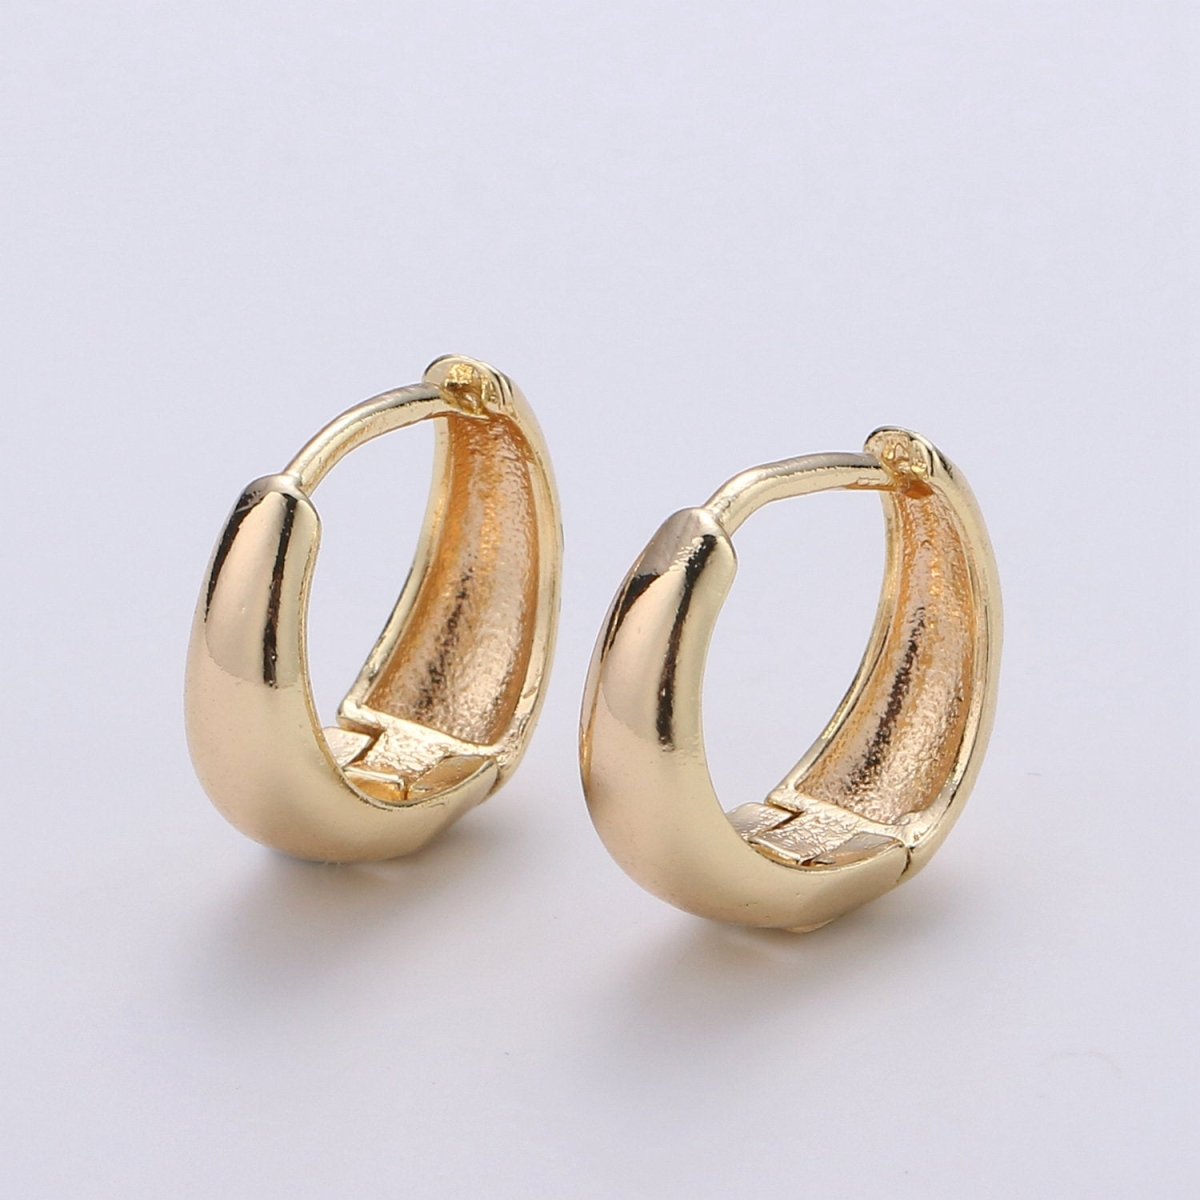 24k Vermeil Gold Earrings, Hoop Earring, Dainty Earrings, Simple Gold Plated Jewelry, Everyday Wear Earrings, Fashion Jewelry P-036 - DLUXCA